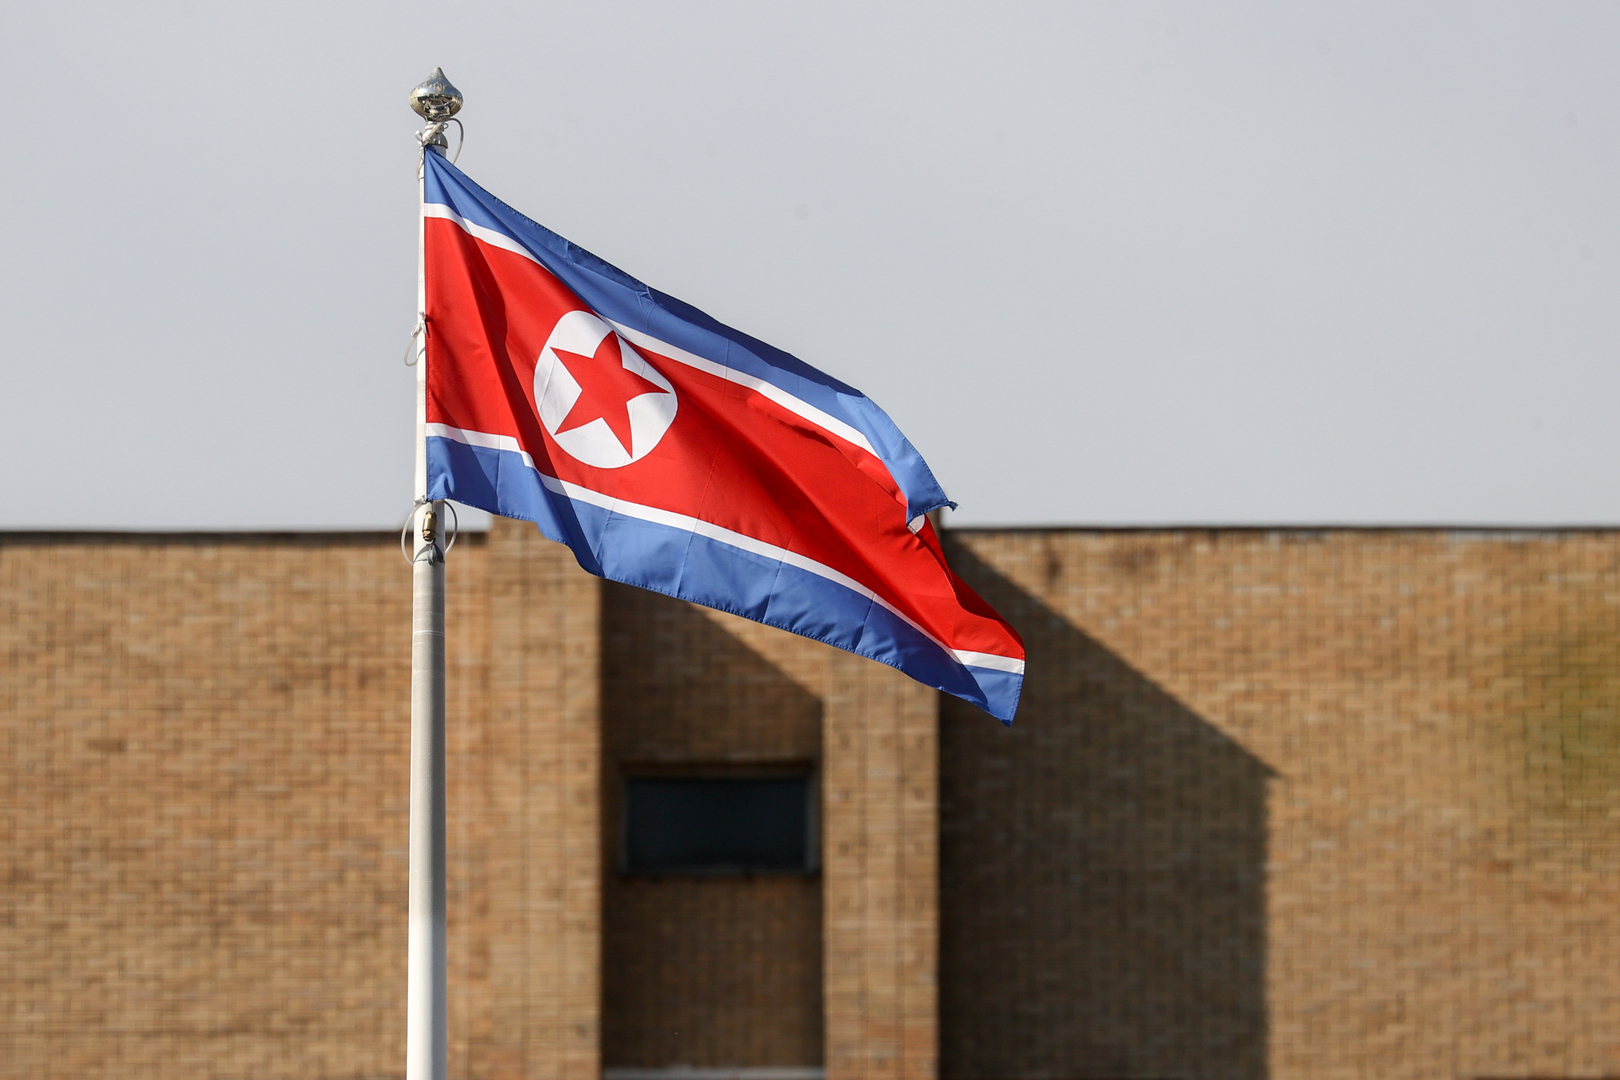 كوريا الشمالية تضع قمرا صناعيا عسكريا في المدار بنجاح وتتعهد بوضع المزيد منها